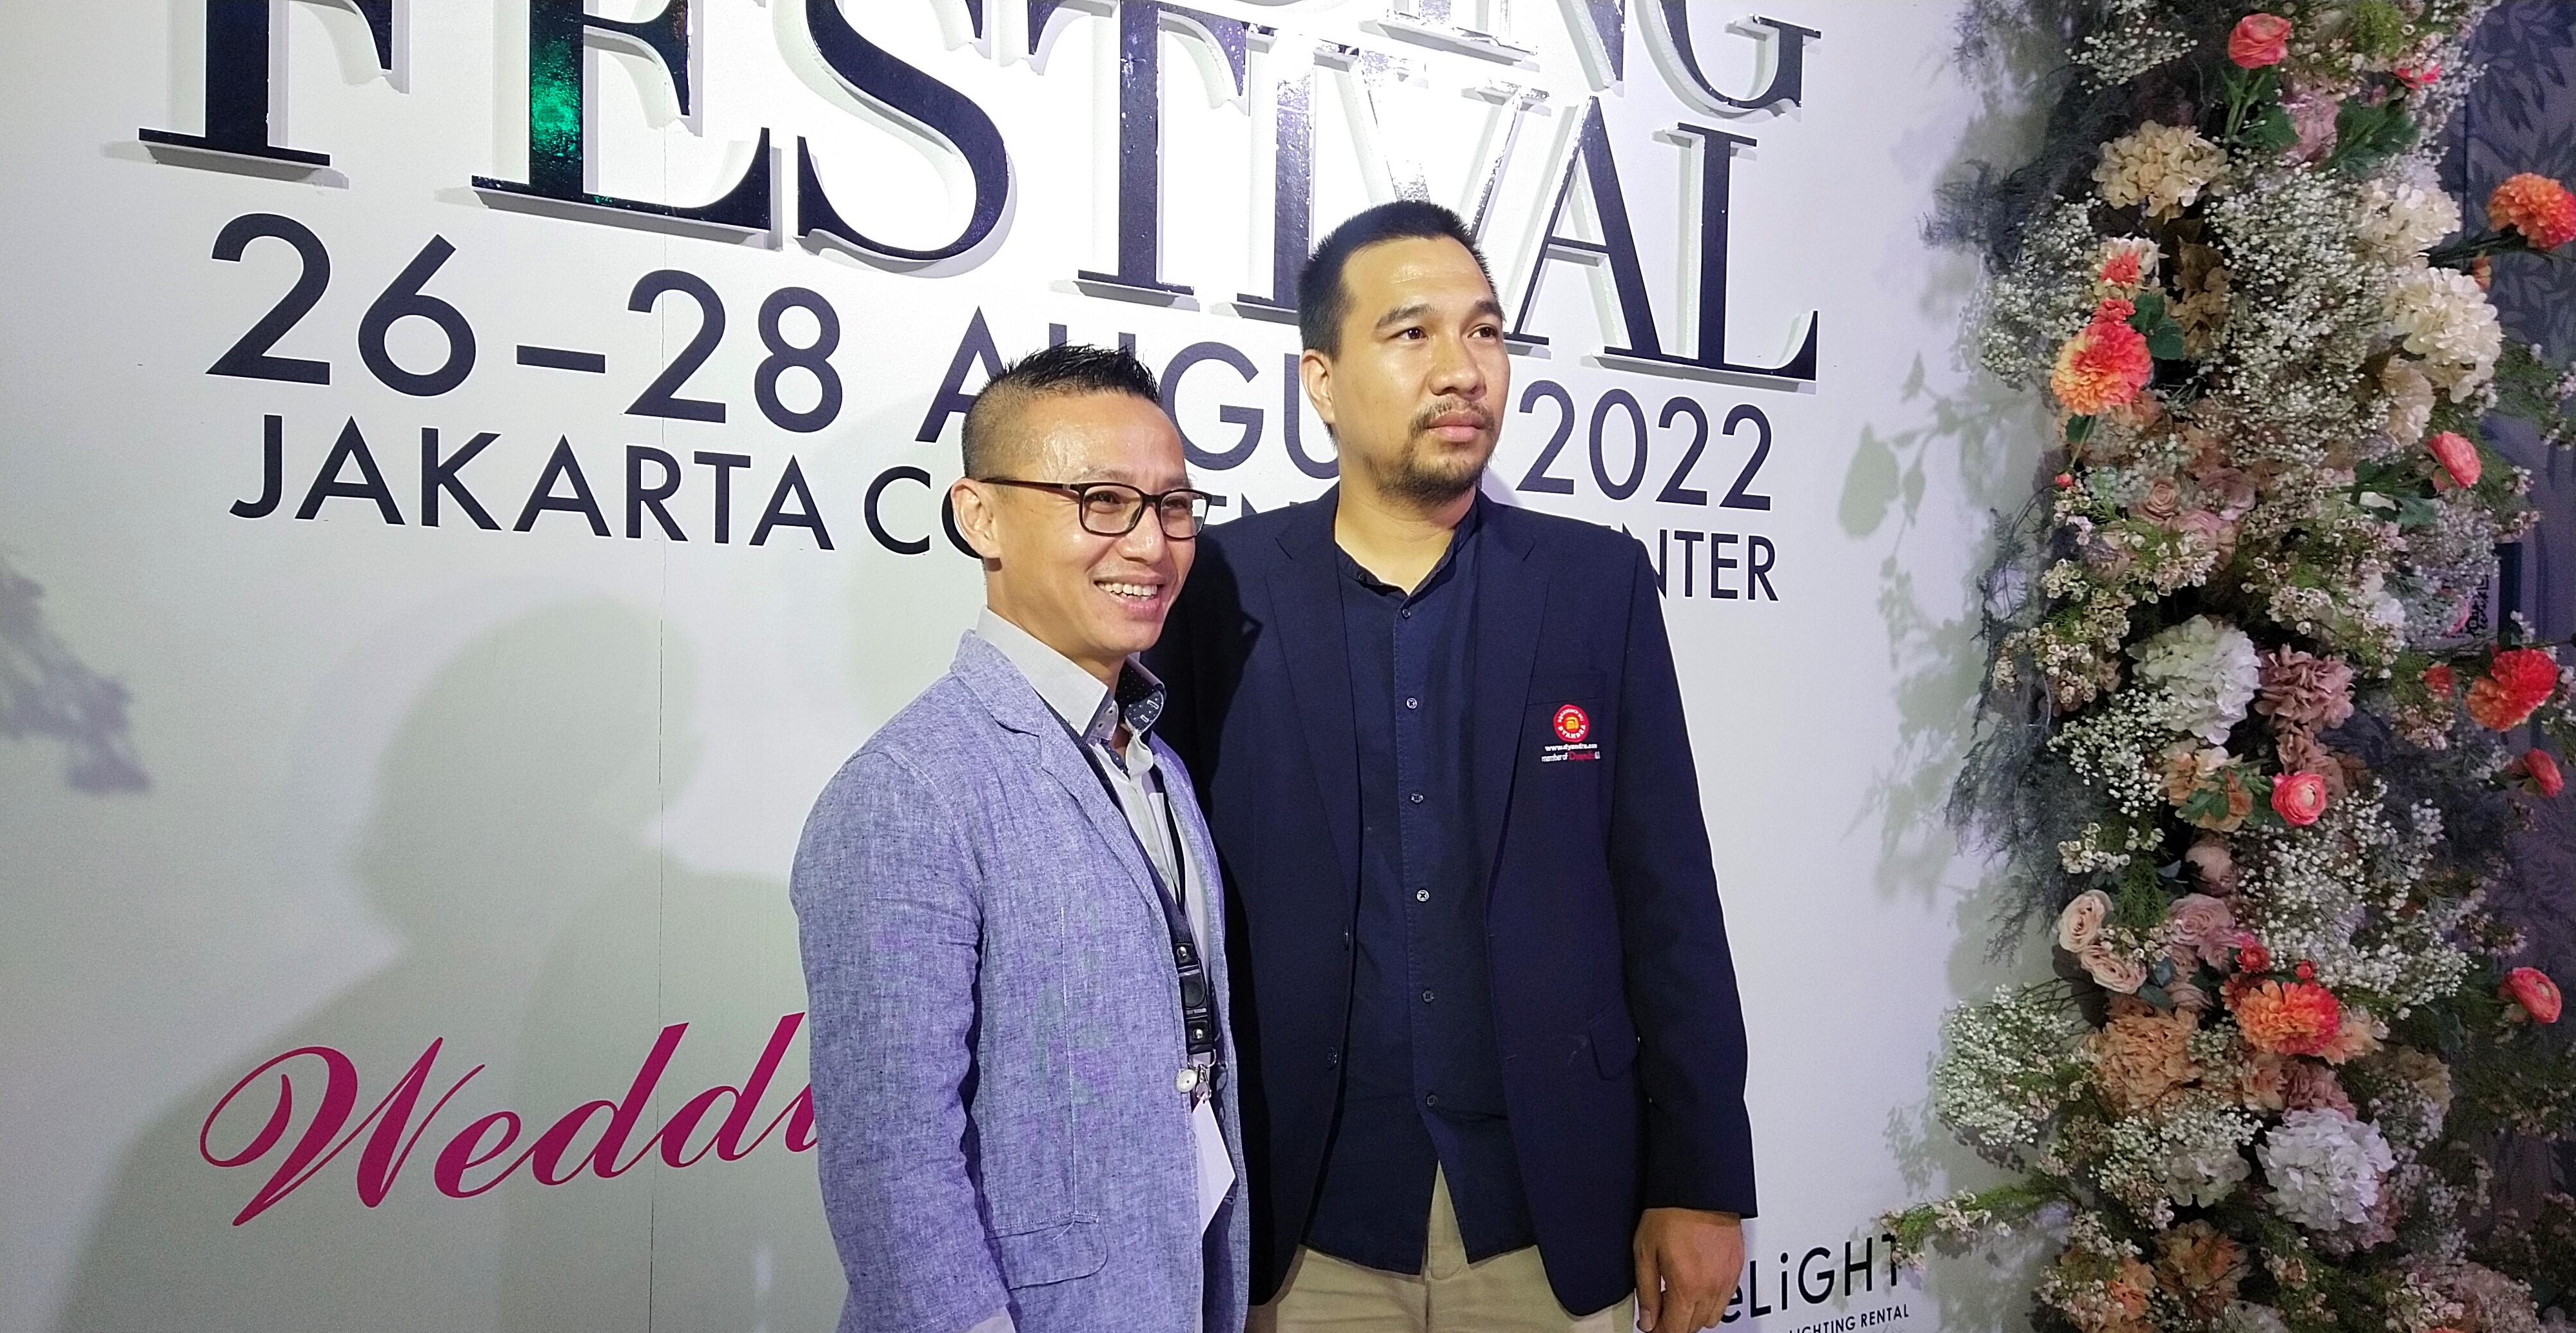 CEO Weddingku Group Tono Rahardja (kiri) dan Project Manager Dyandra Promosindo Rio Murriyansah (kanan) dalam Jakarta Wedding Festival 2022, Jumat (26/8/2022). (Sumber gambar: Hypeabis.id/Laurensia Felise)